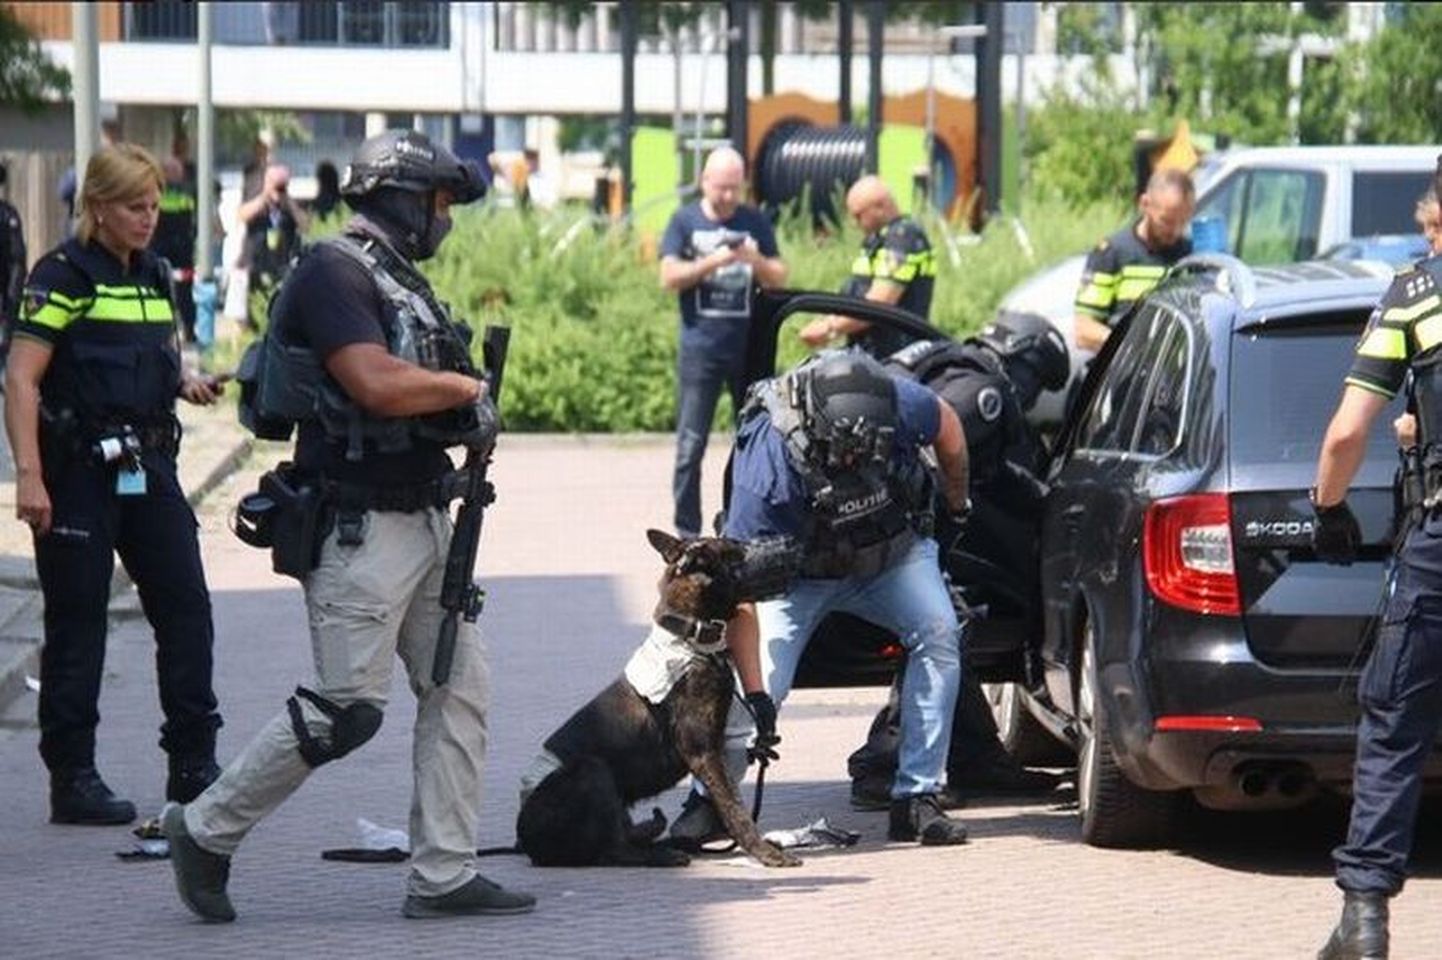 Hollandis suri politseikoer kirvemehe rünnaku järel saadud vigastustesse